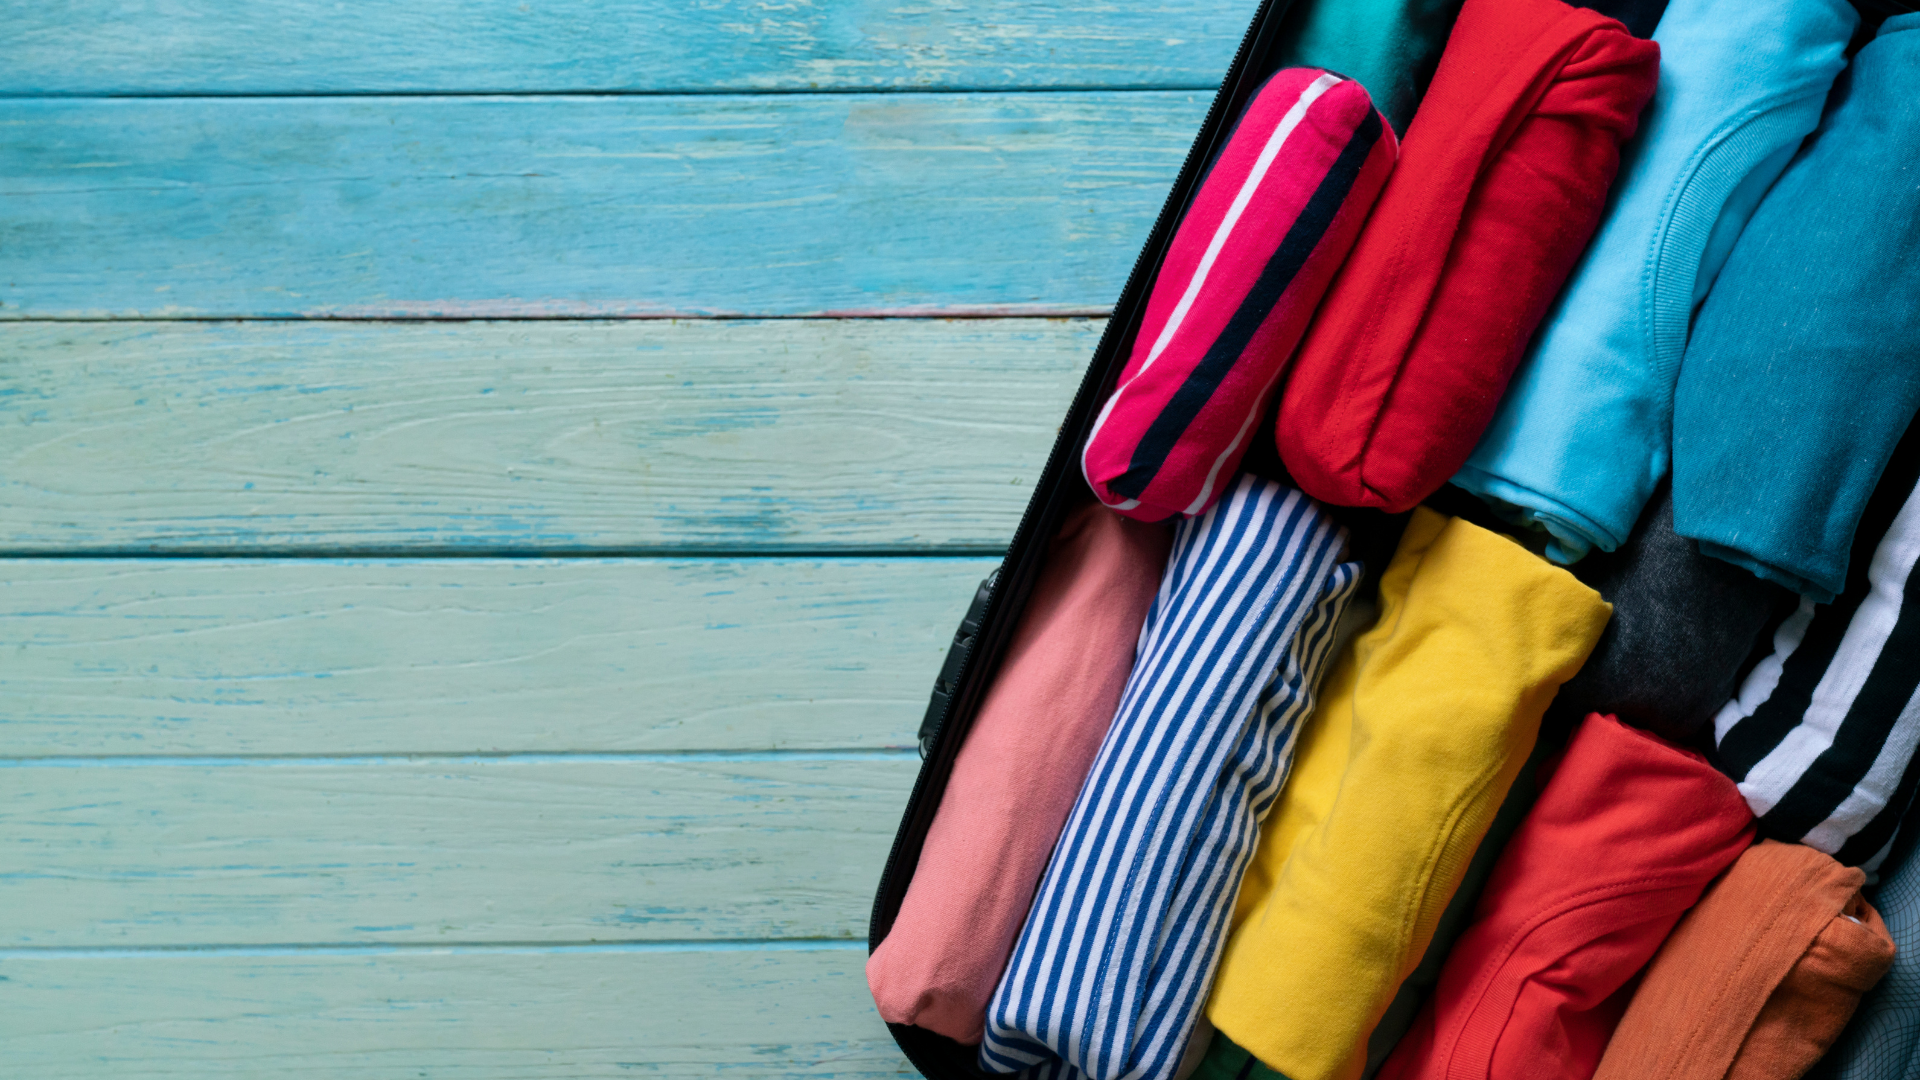 baner zdjecie spakowanych w walizke koszulek roznokolorowych na tle drewnianych desek pomalowanych w odcieniach blekitu